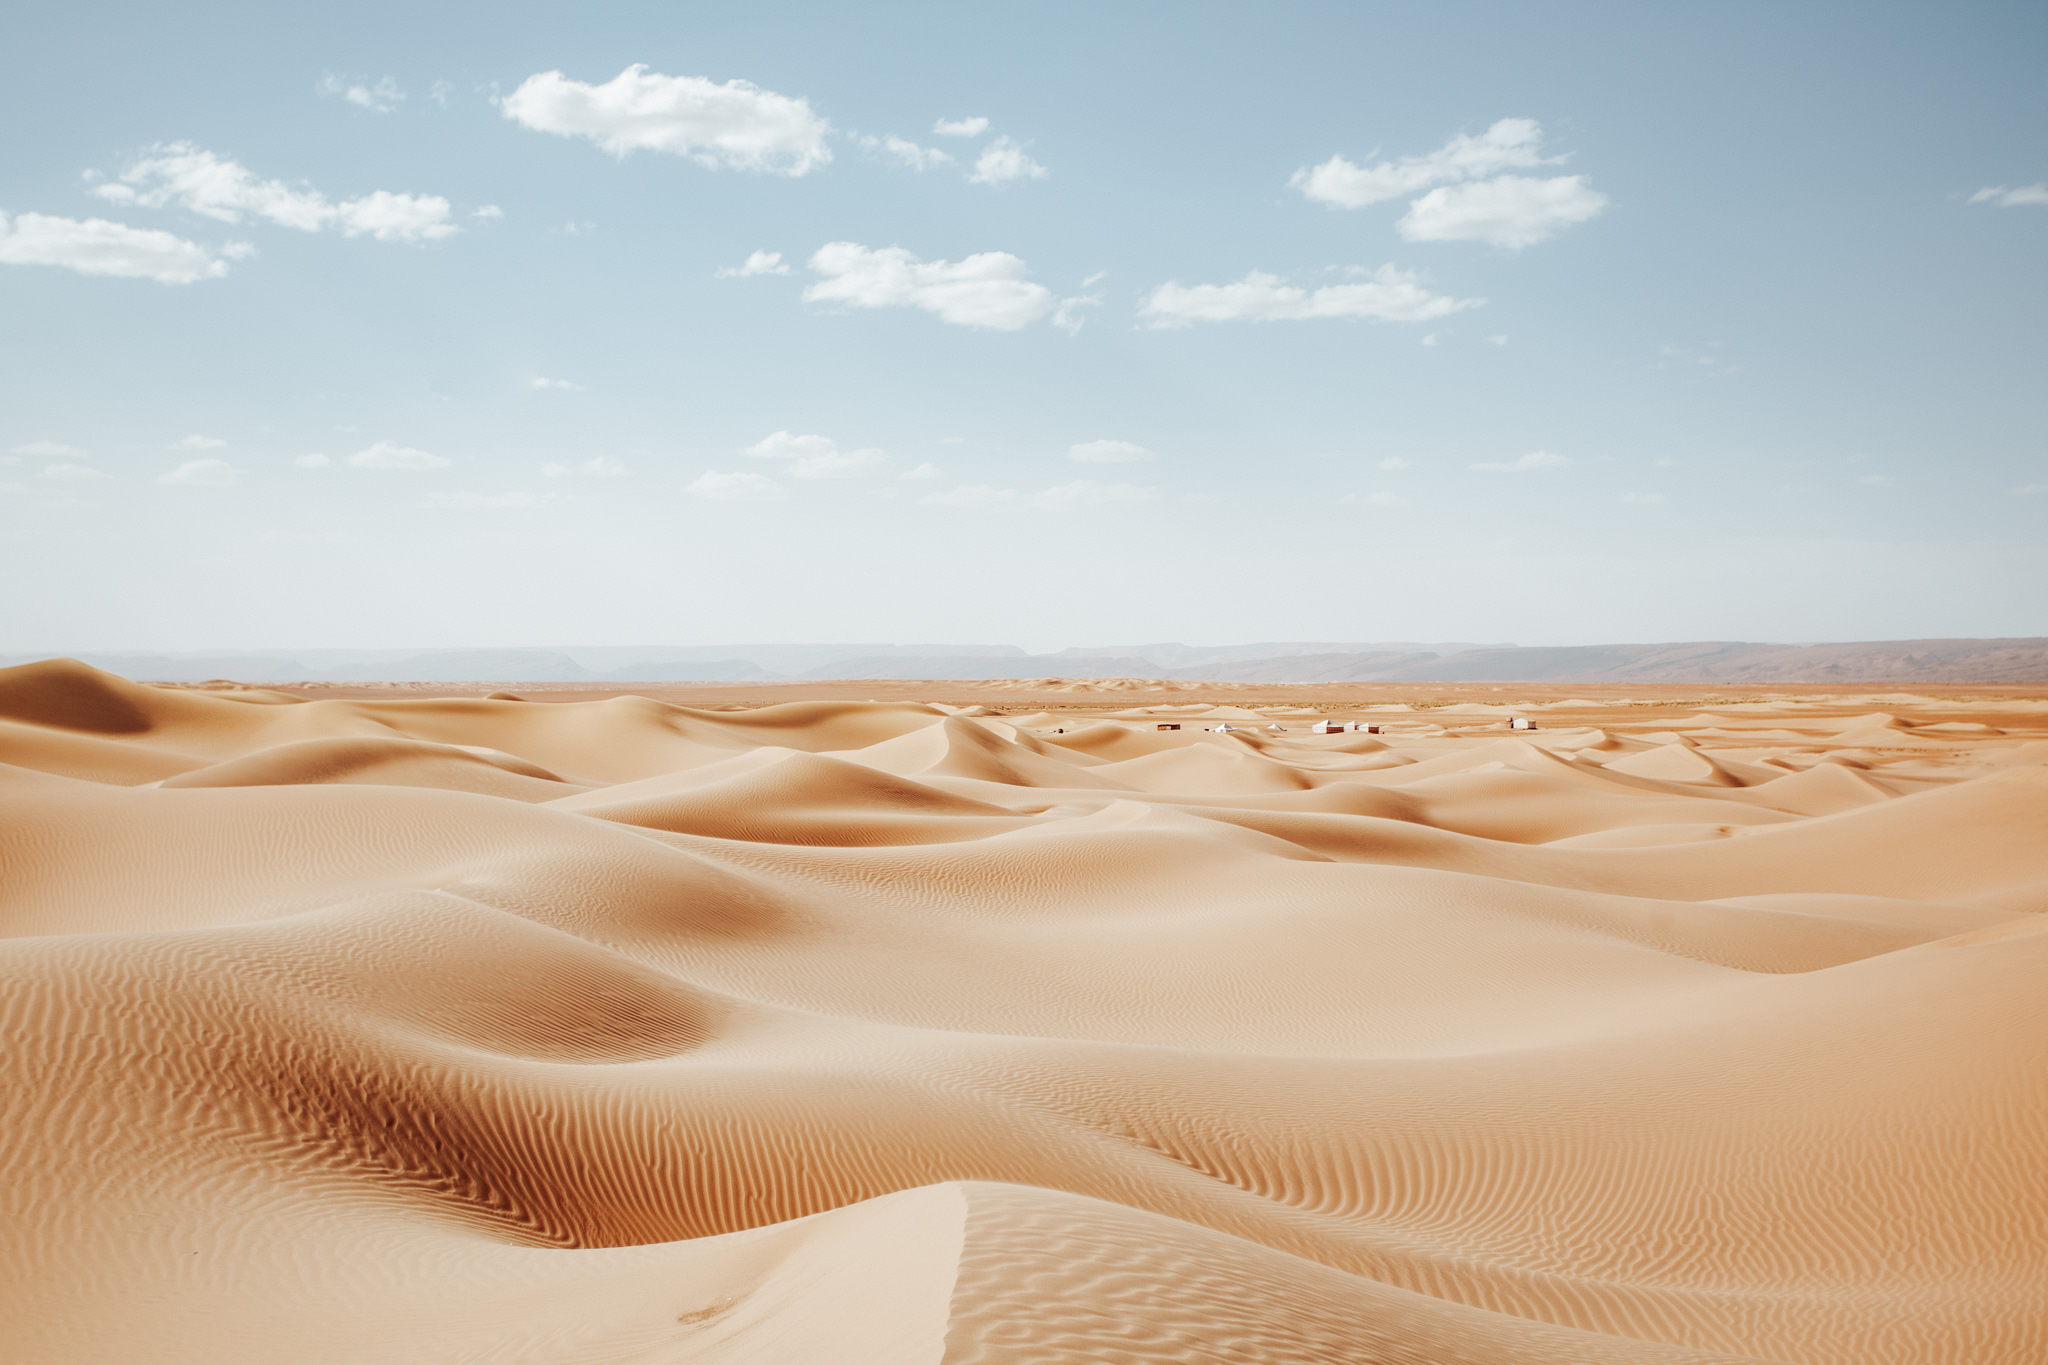 sand dunes in moroccan desert